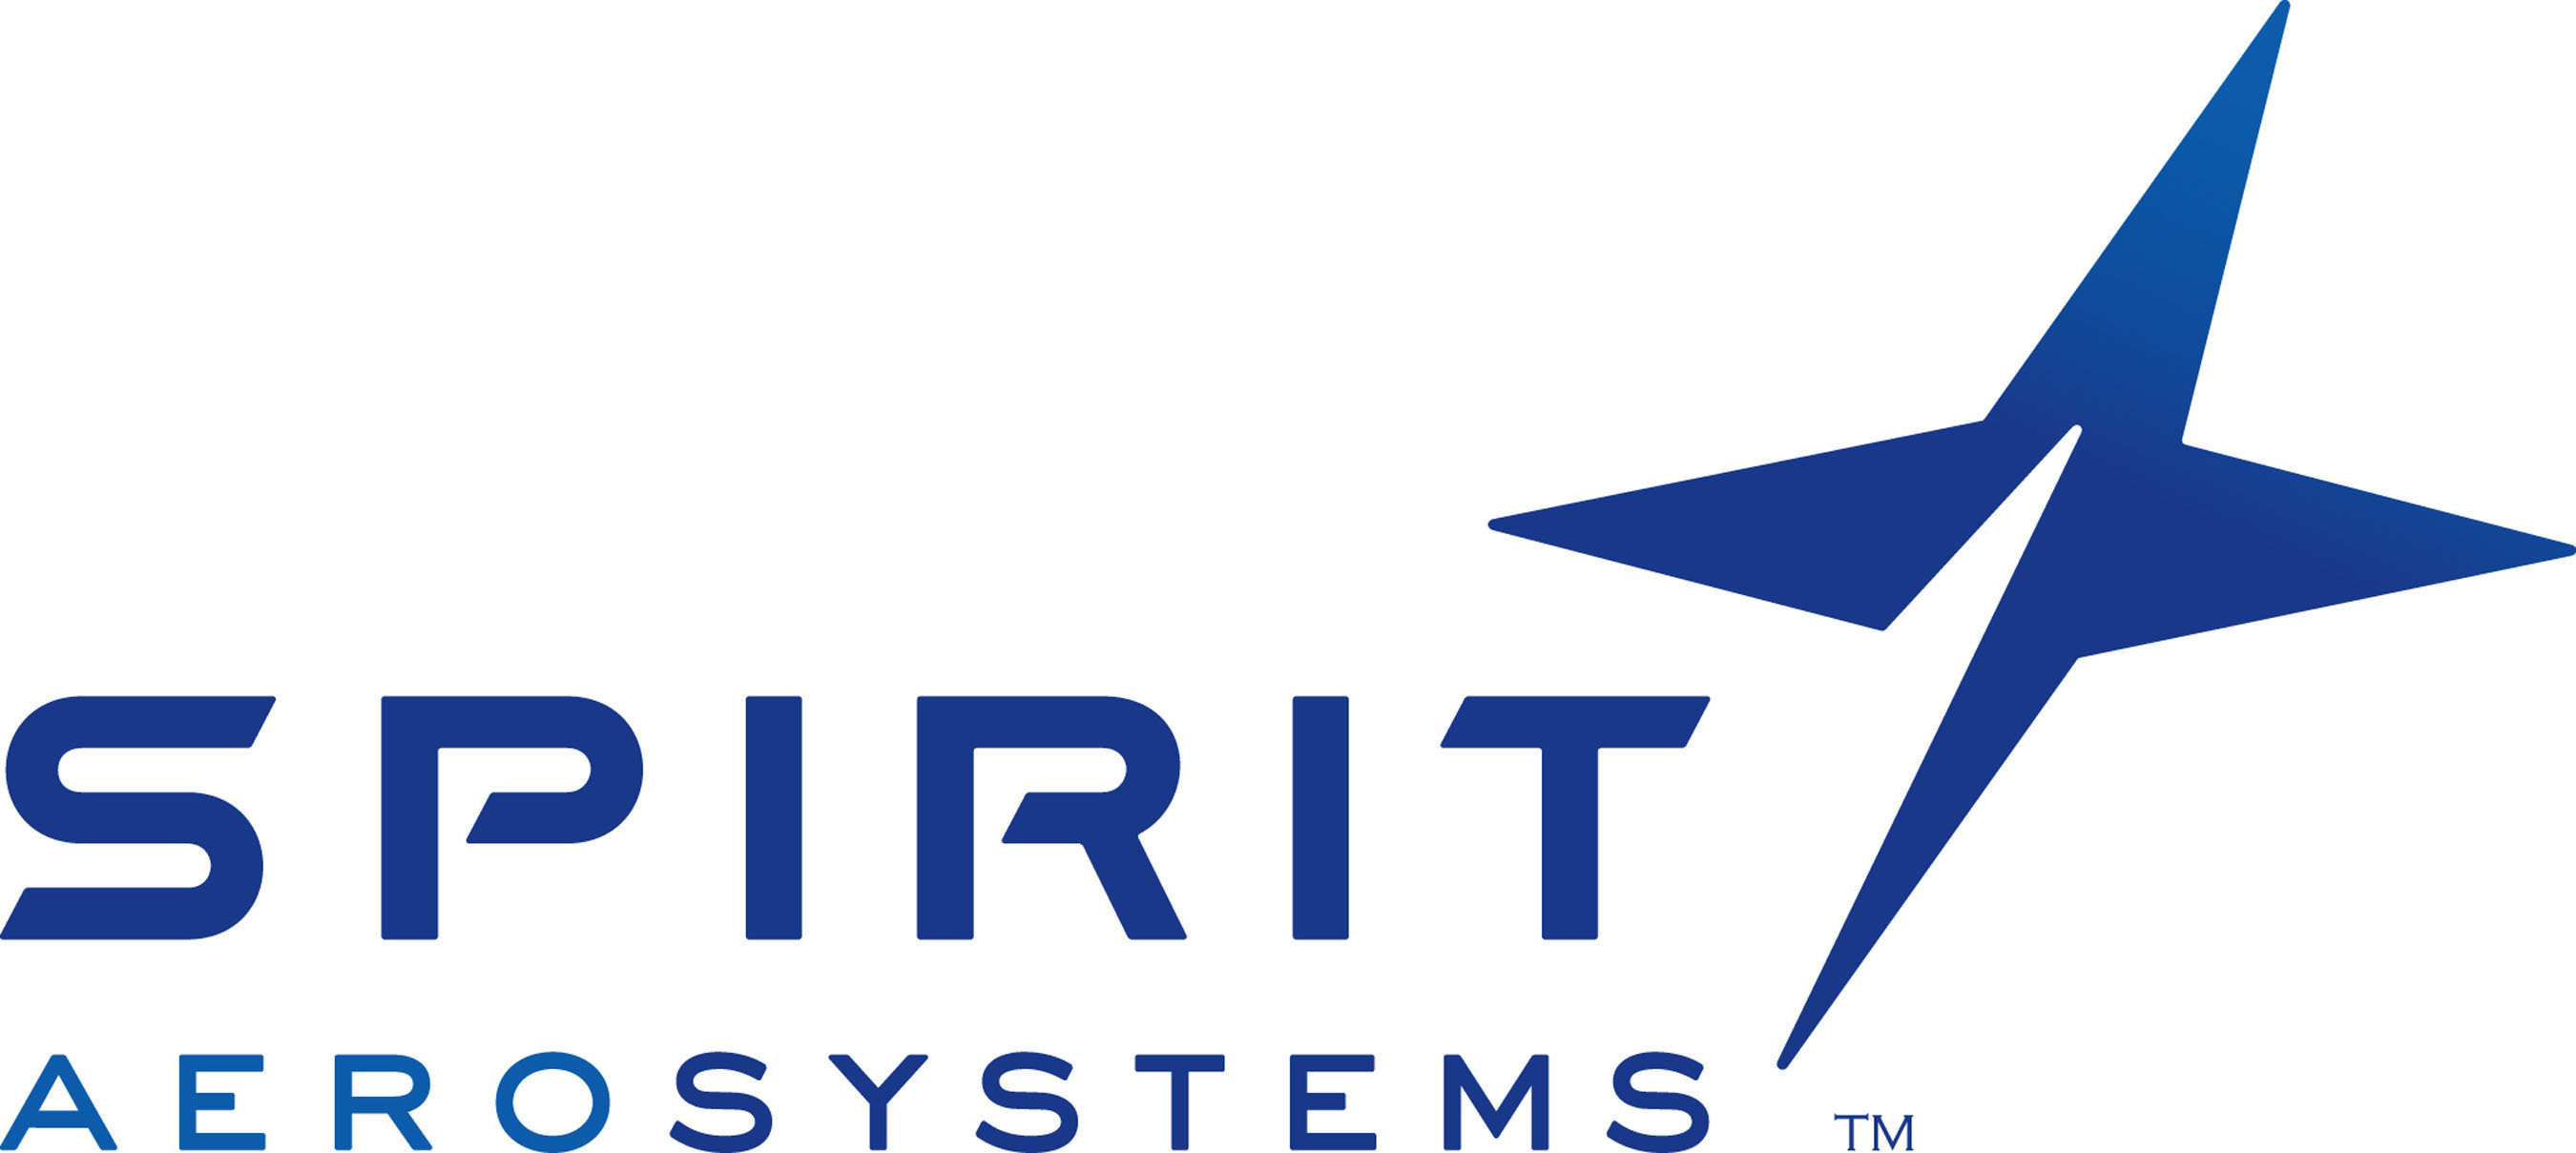 Resultado de imagen para spirit aeerosystem logo"